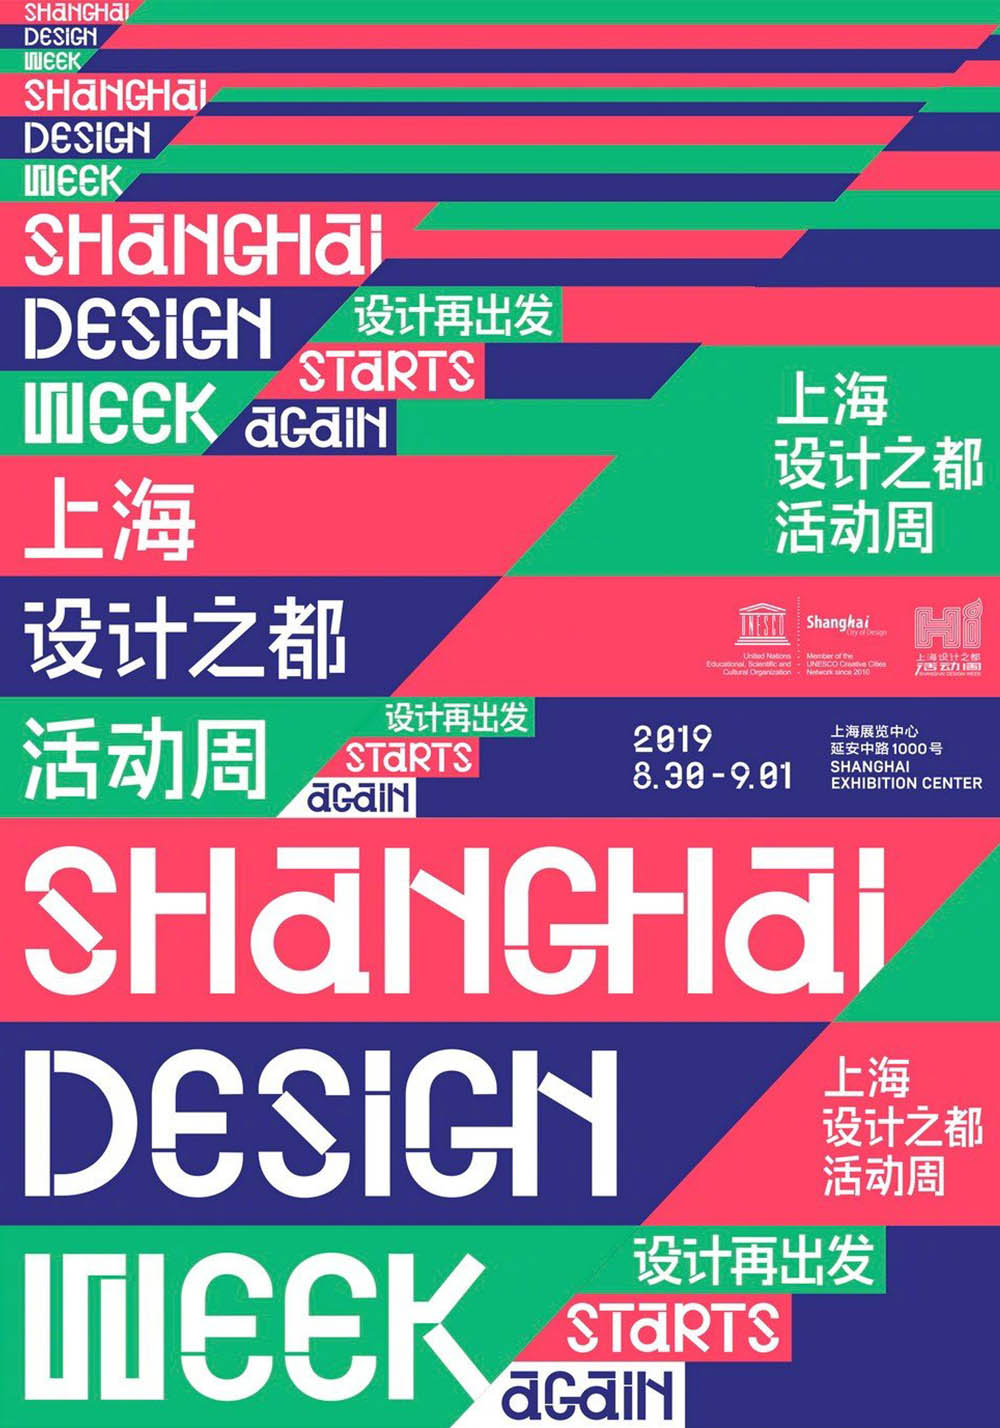 9张中文海报设计